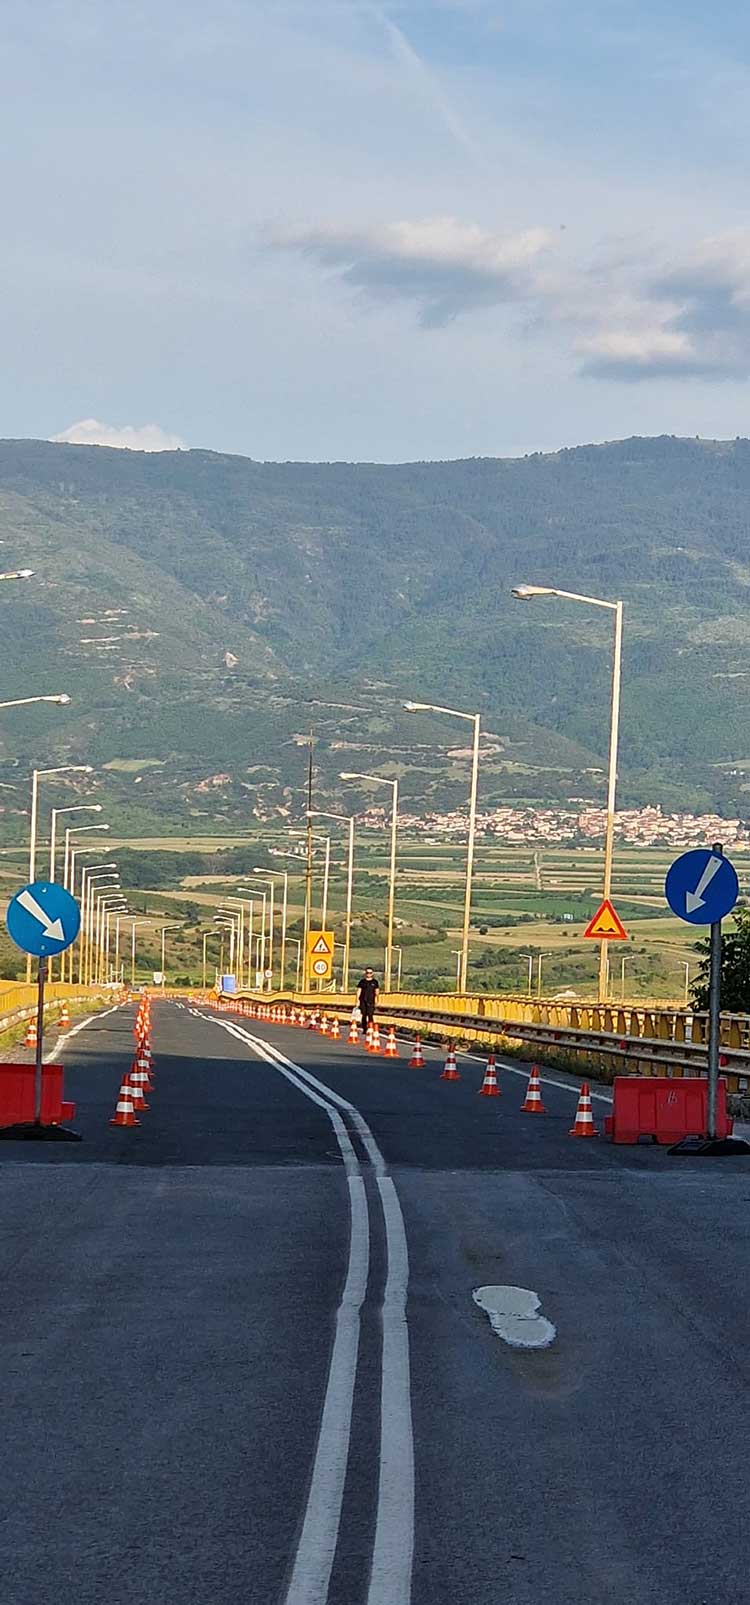 Την Παρασκευή η δημοπράτηση της μελέτης για τη Γέφυρα Σερβίων- Πότε αναμένεται η υπογραφή της σύμβασης και ο μακρύς δρόμος της χρηματοδότησης